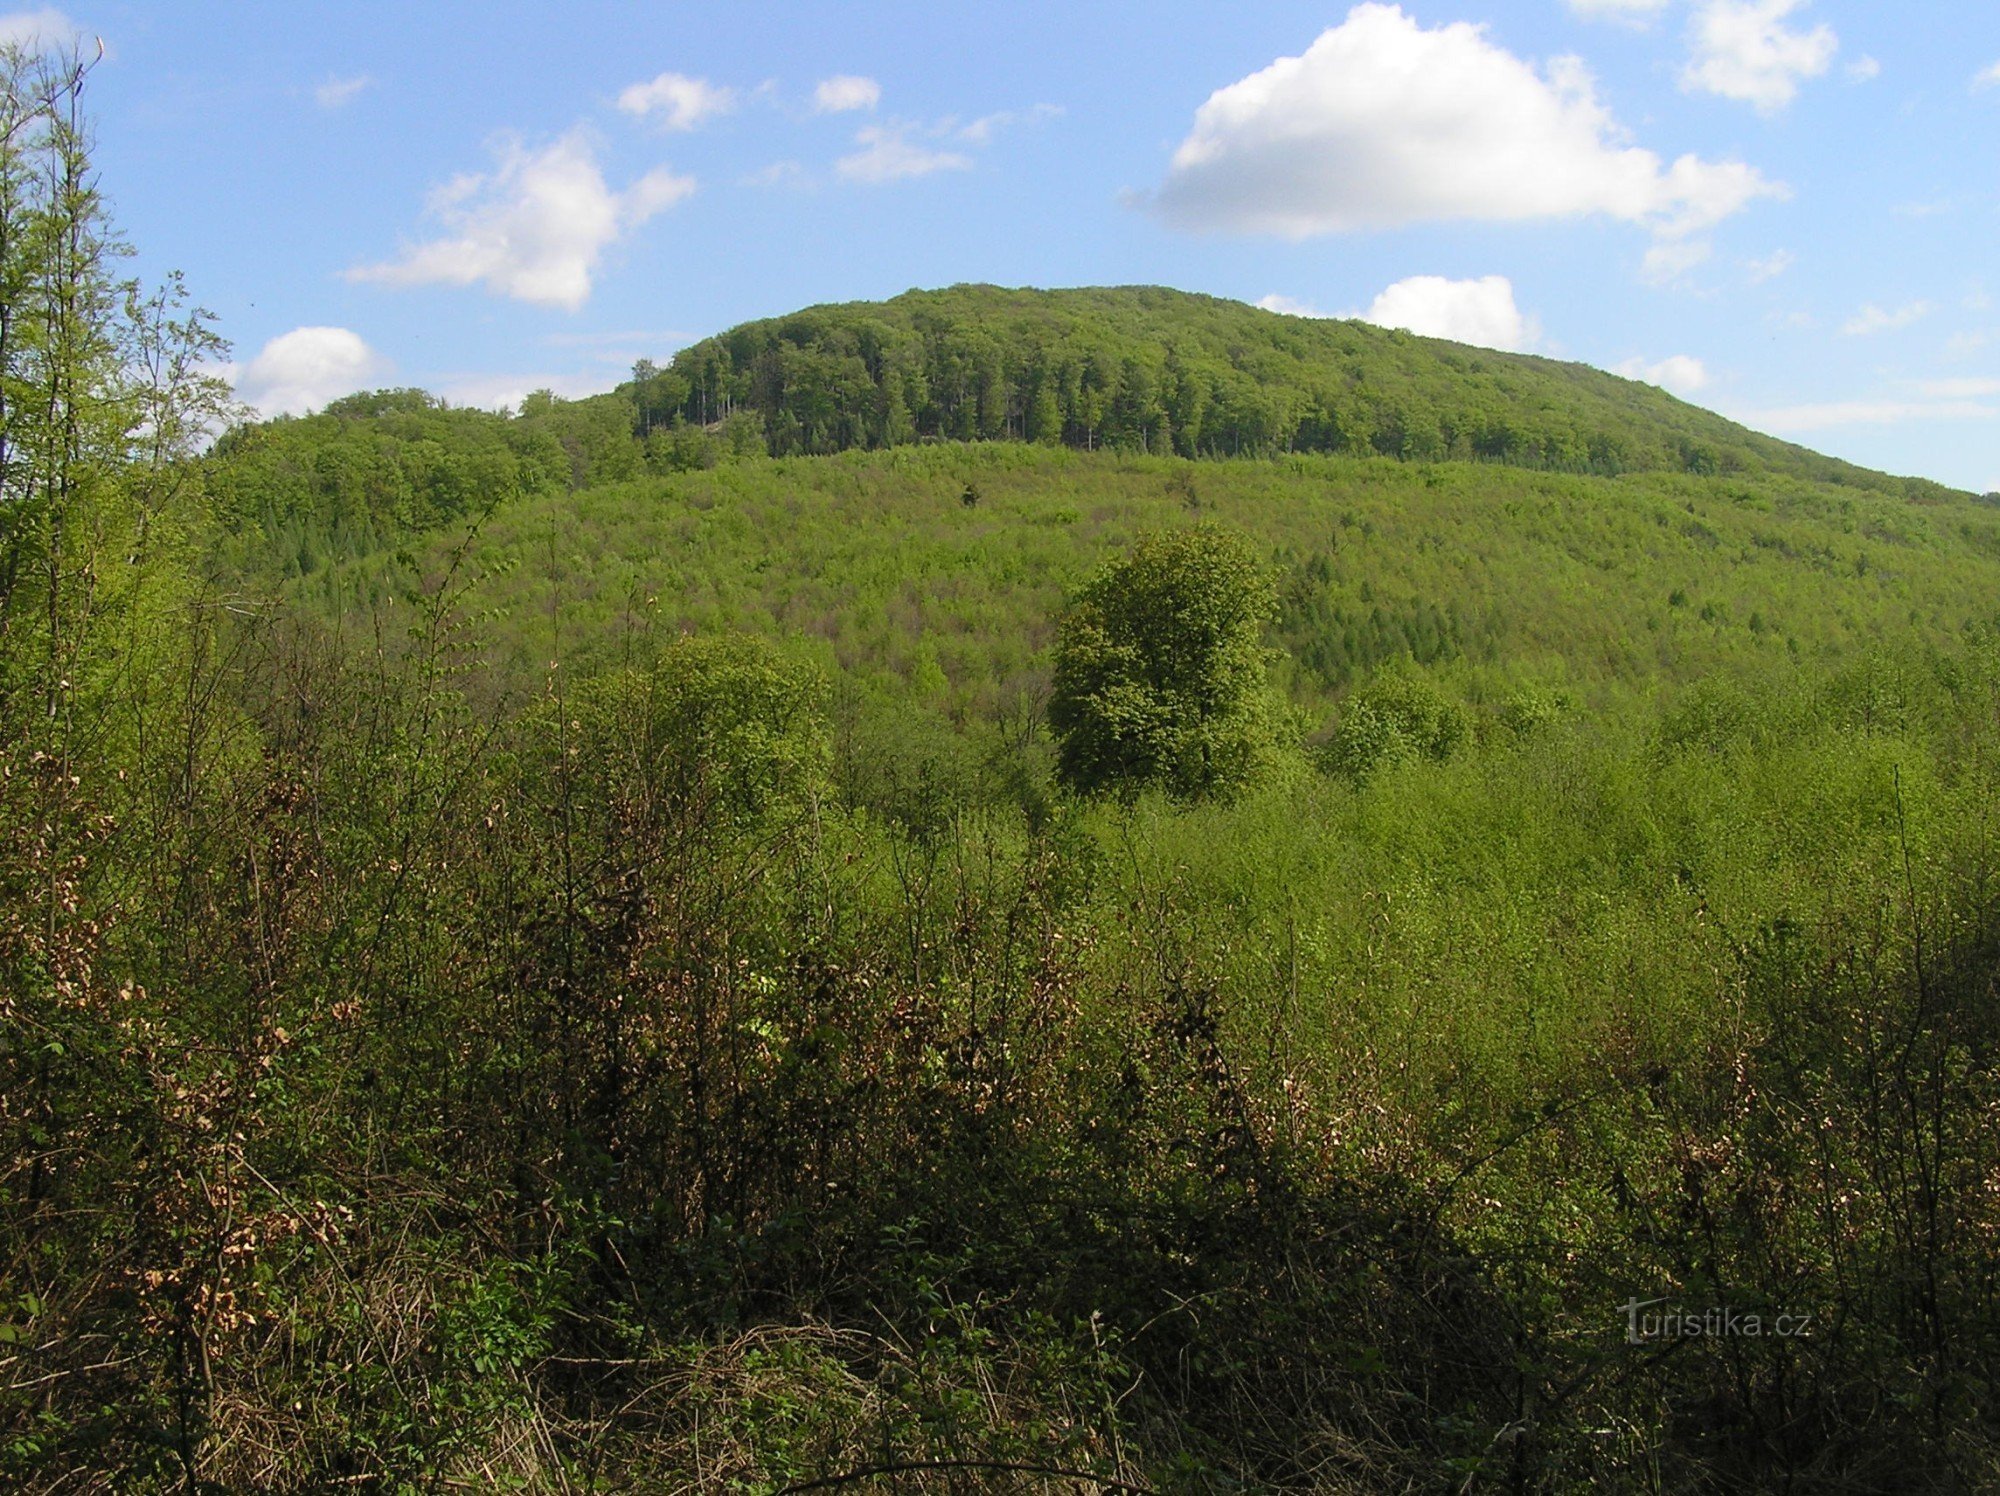 widok ogólny na Holý kopec od południowego zachodu - rezerwat zajmuje starsze leśne poro